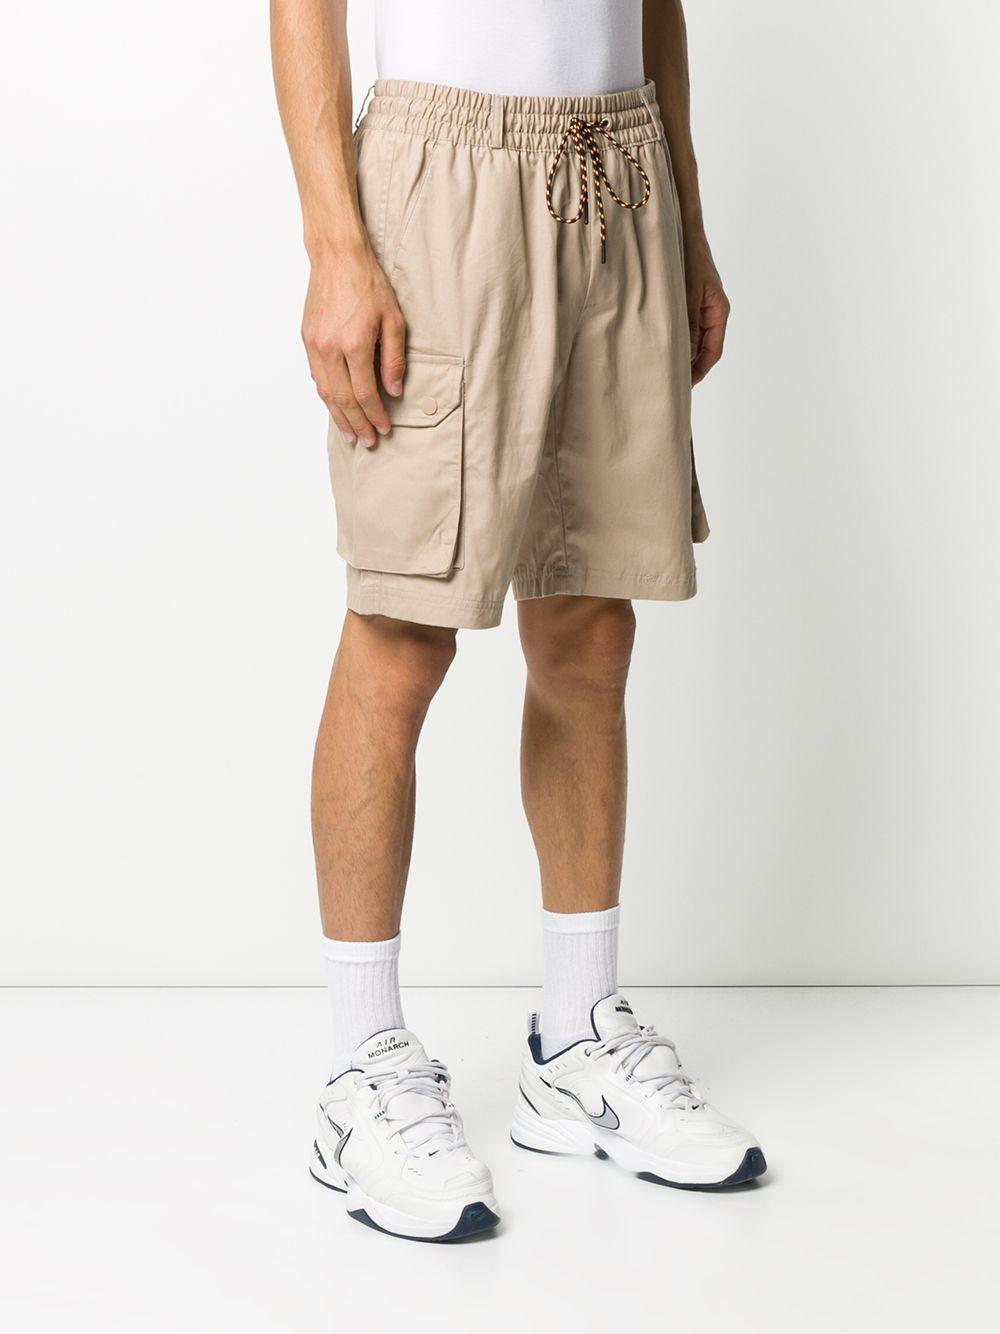 adidas Originals Cotton Adiplore Cargo Shorts in Natural for Men - Lyst